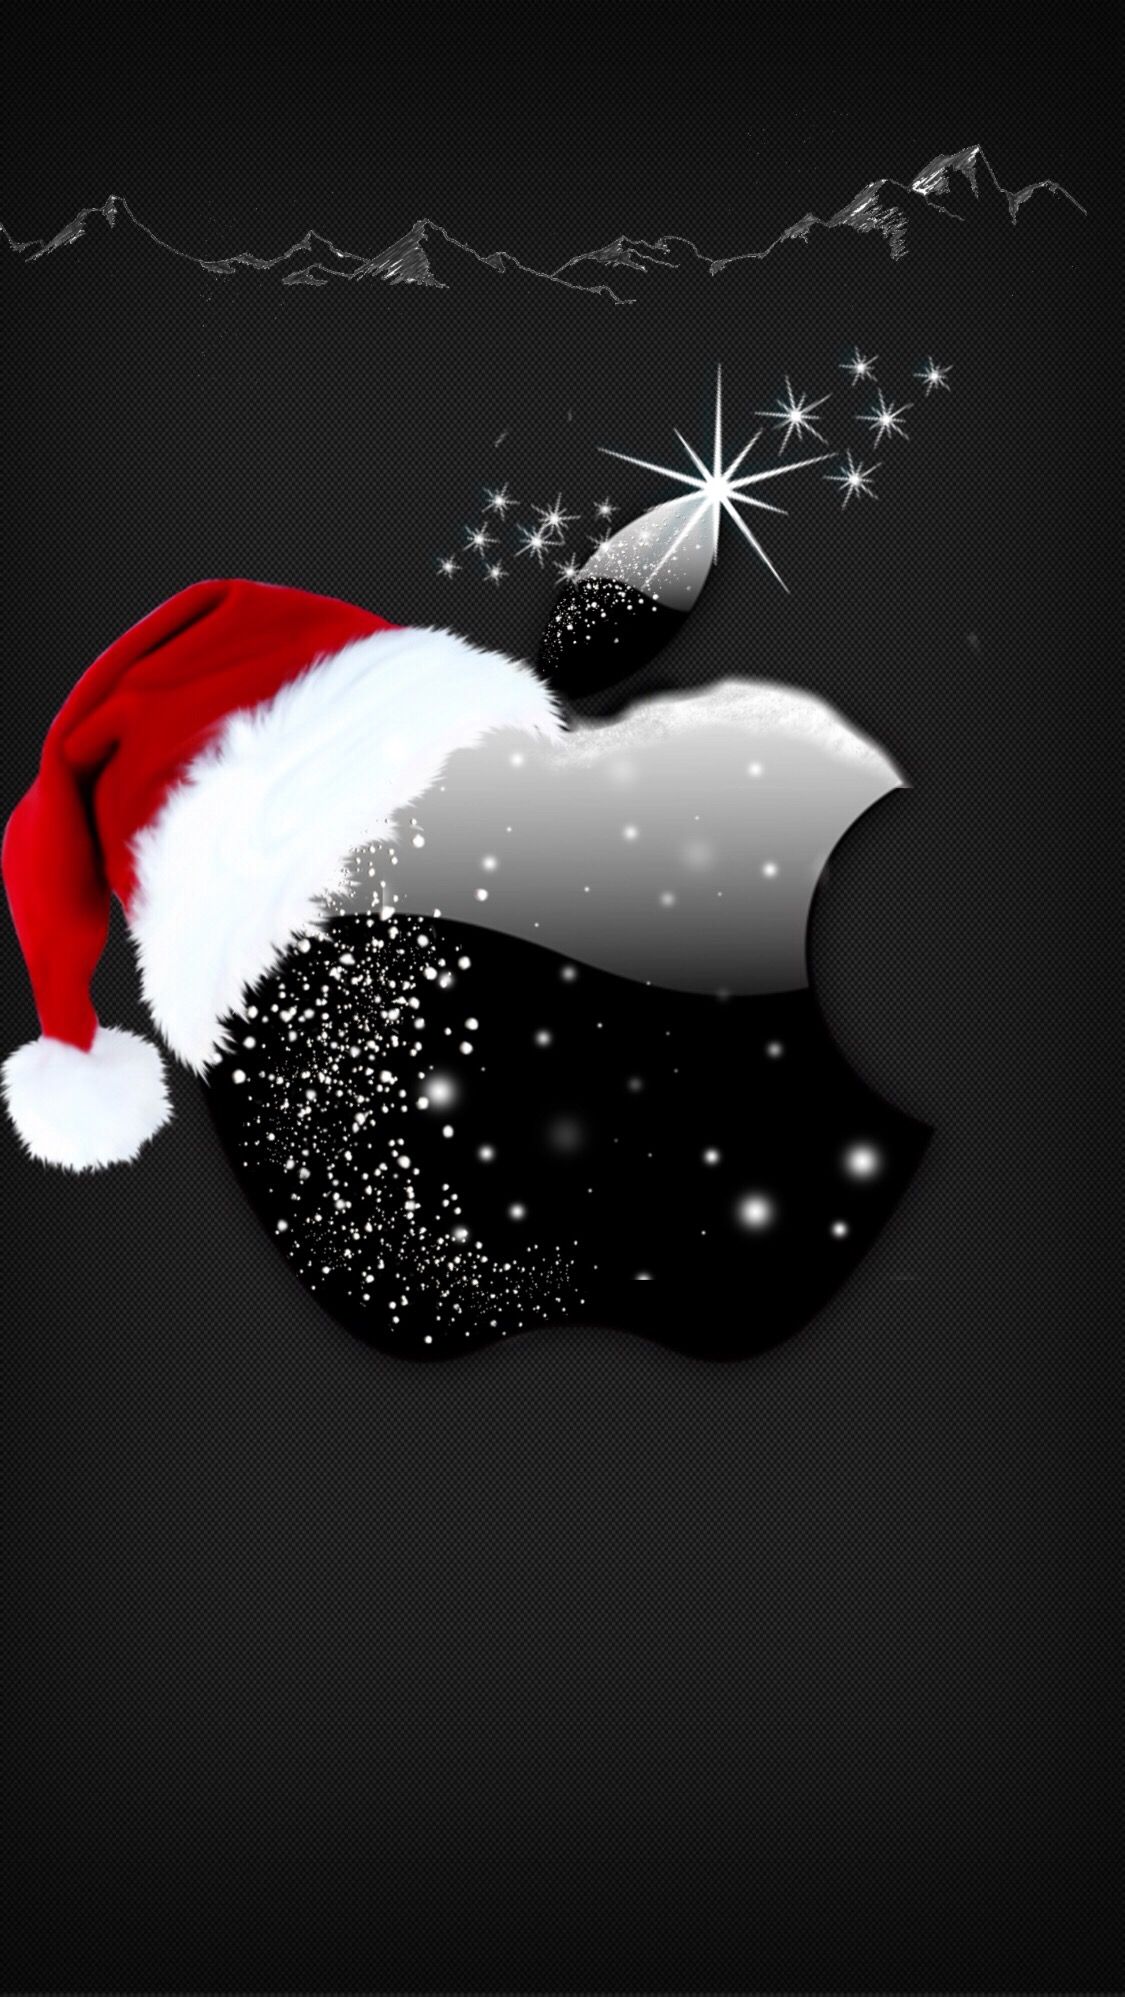 사과 크리스마스 벽지,삽화,하늘,그래픽 디자인,폰트,산타 클로스